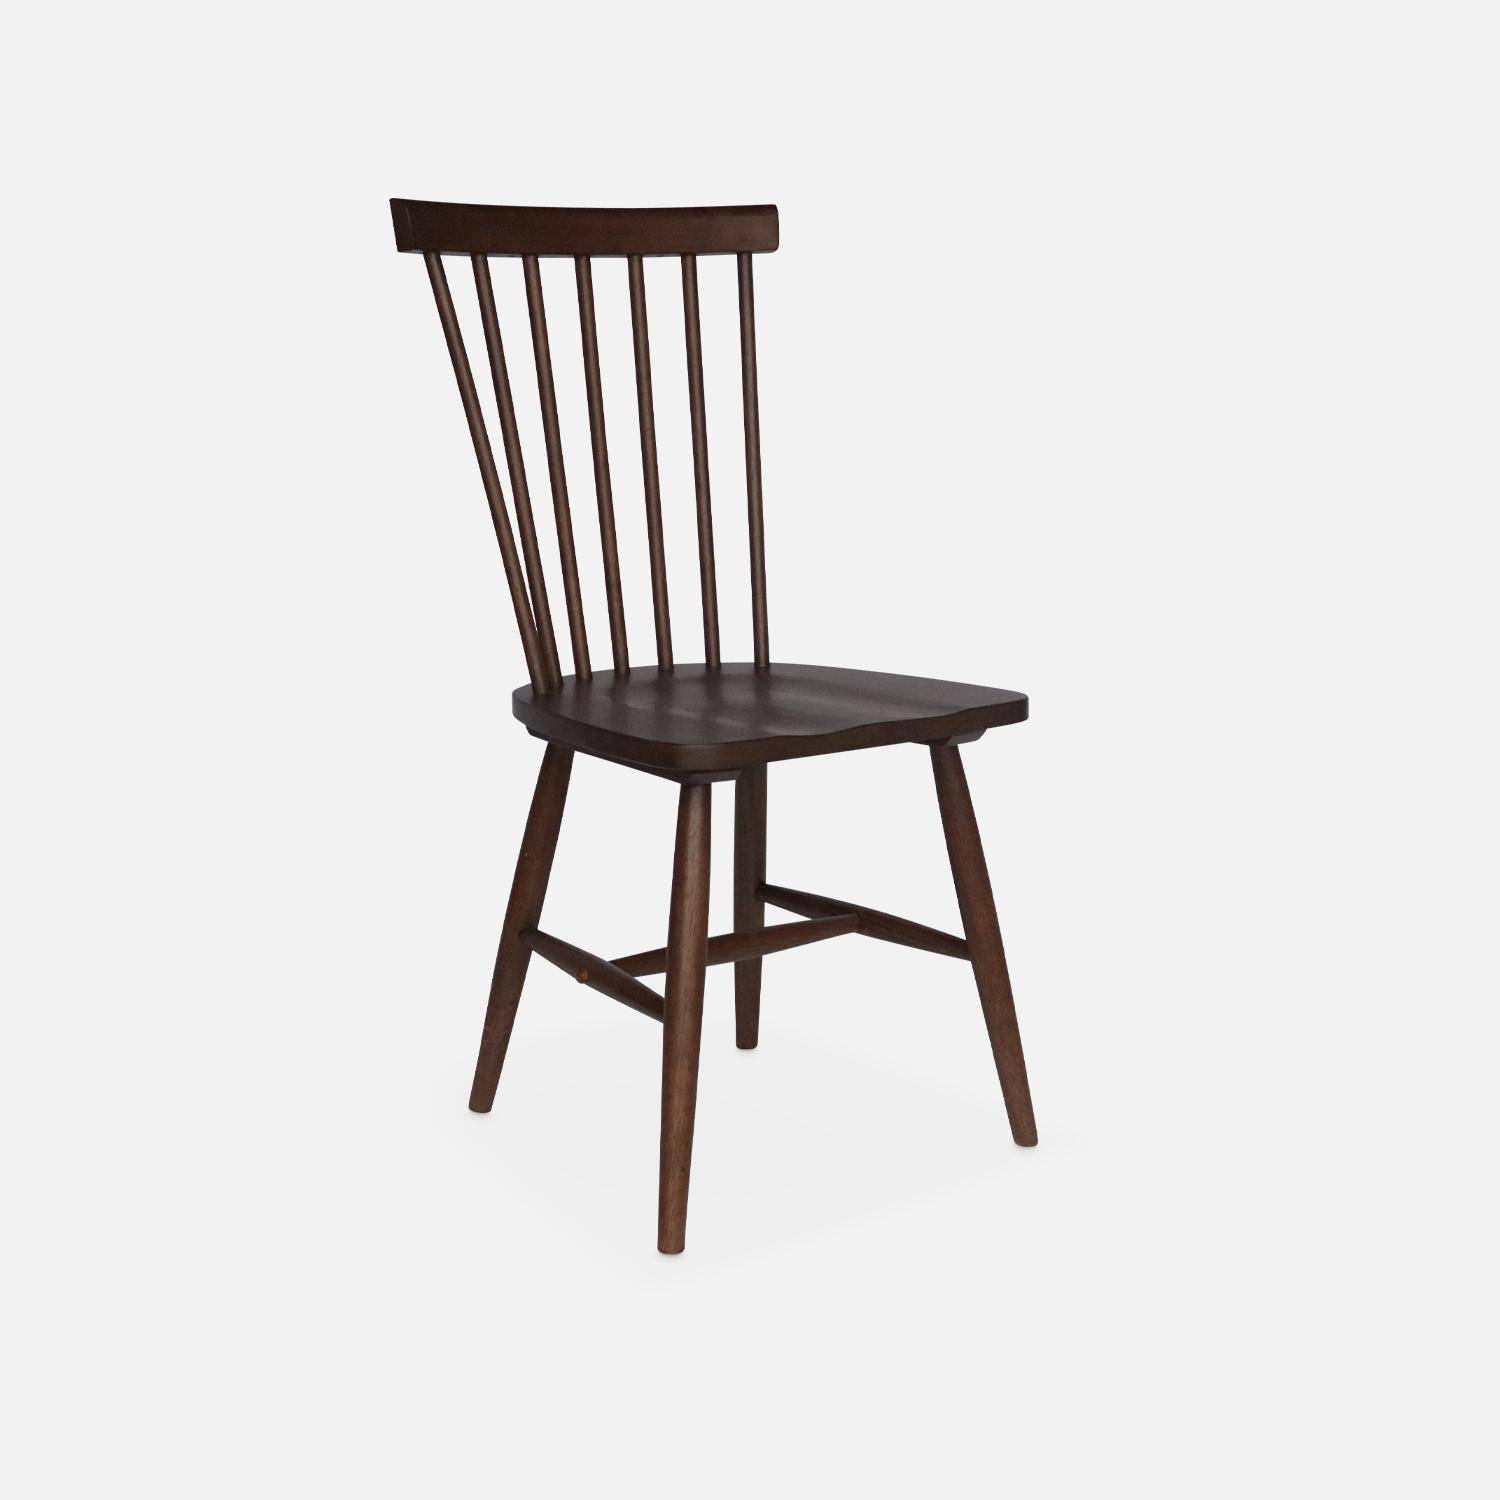 Conjunto de 2 cadeiras de nogueira com ripas de madeira de borracha, ROMIE, L 50,8 x P 44,2 x A 90cm. Photo6